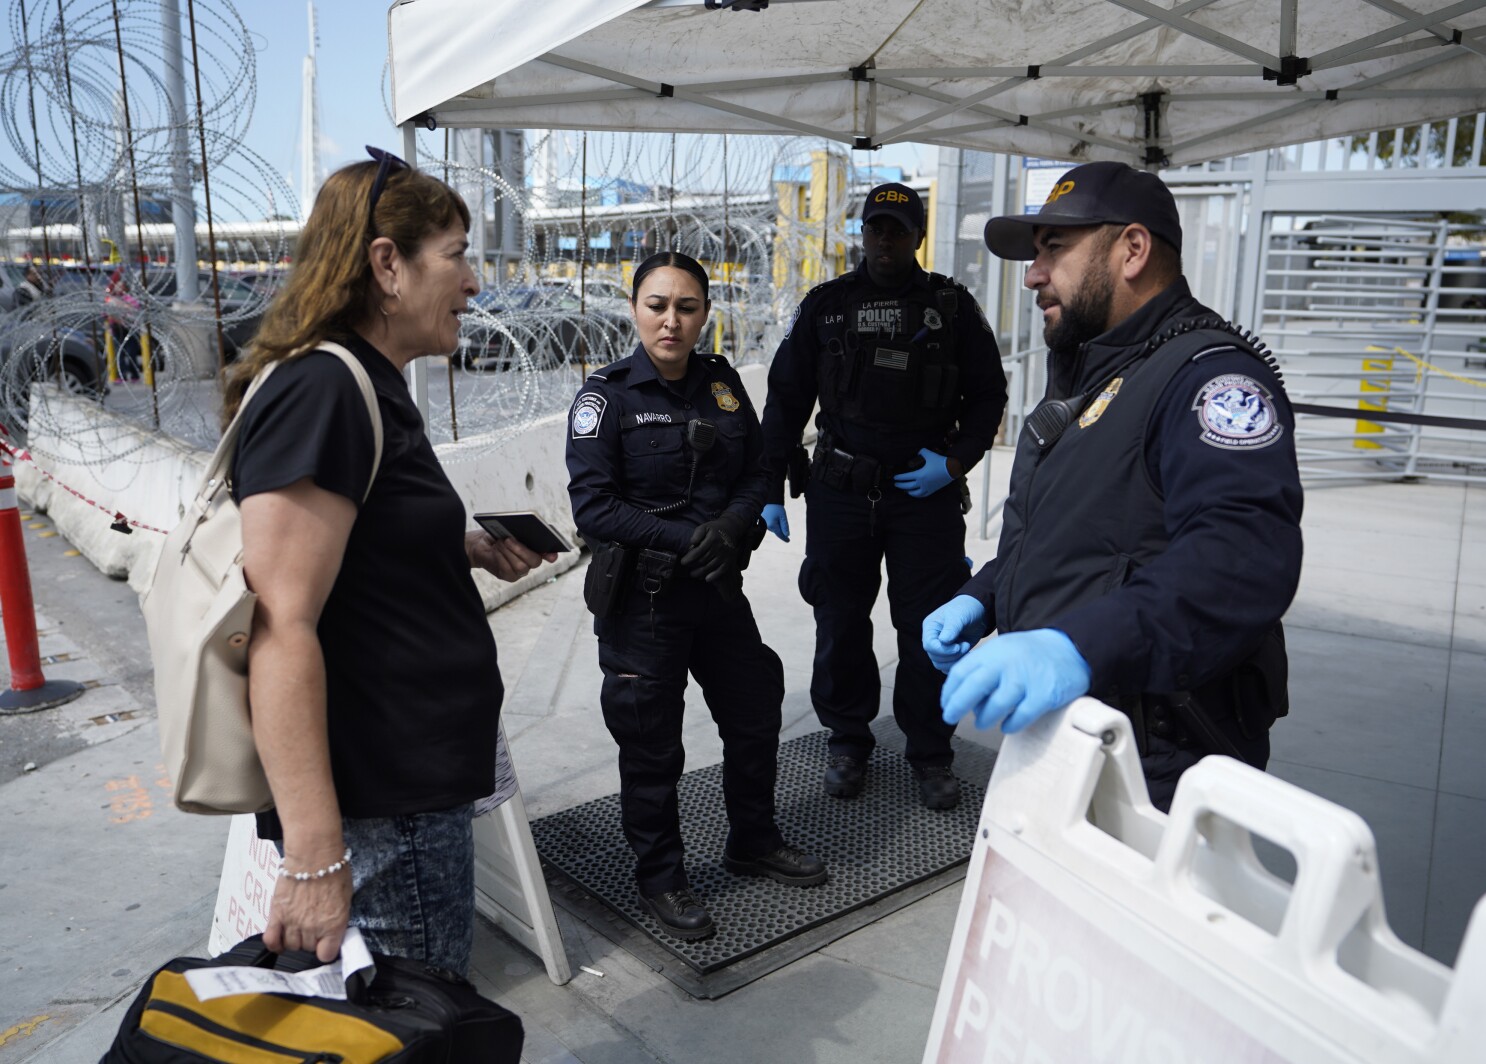 Las restricciones de viaje en la frontera del Coronavirus comienzan a  afectar la vida diaria - San Diego Union-Tribune en Español